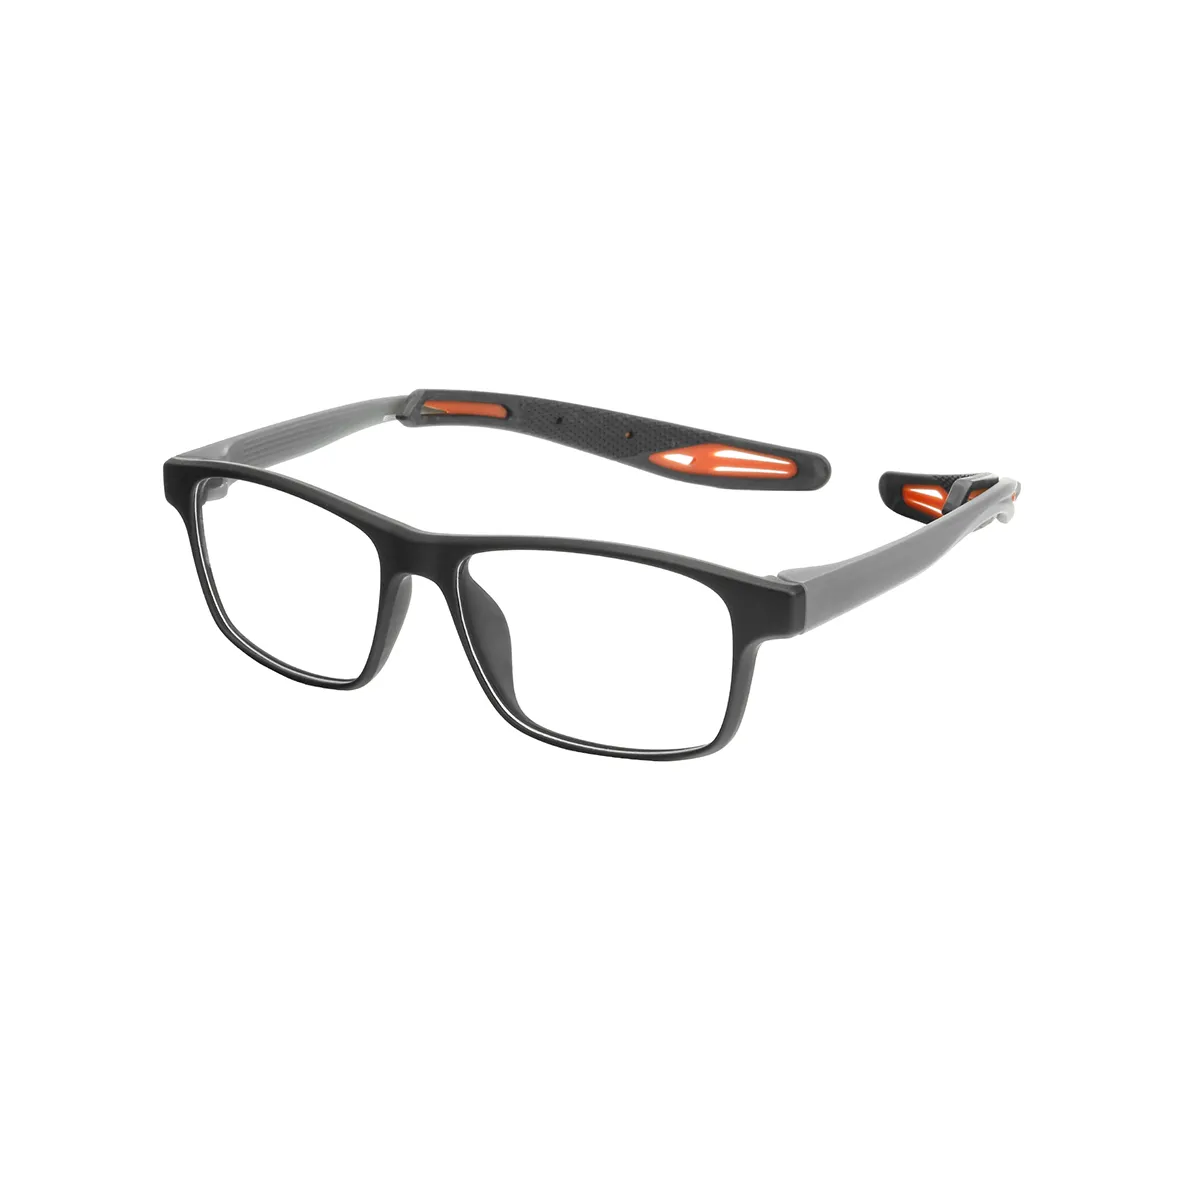 Rankin - Rectangle Black-Orange Glasses for Men